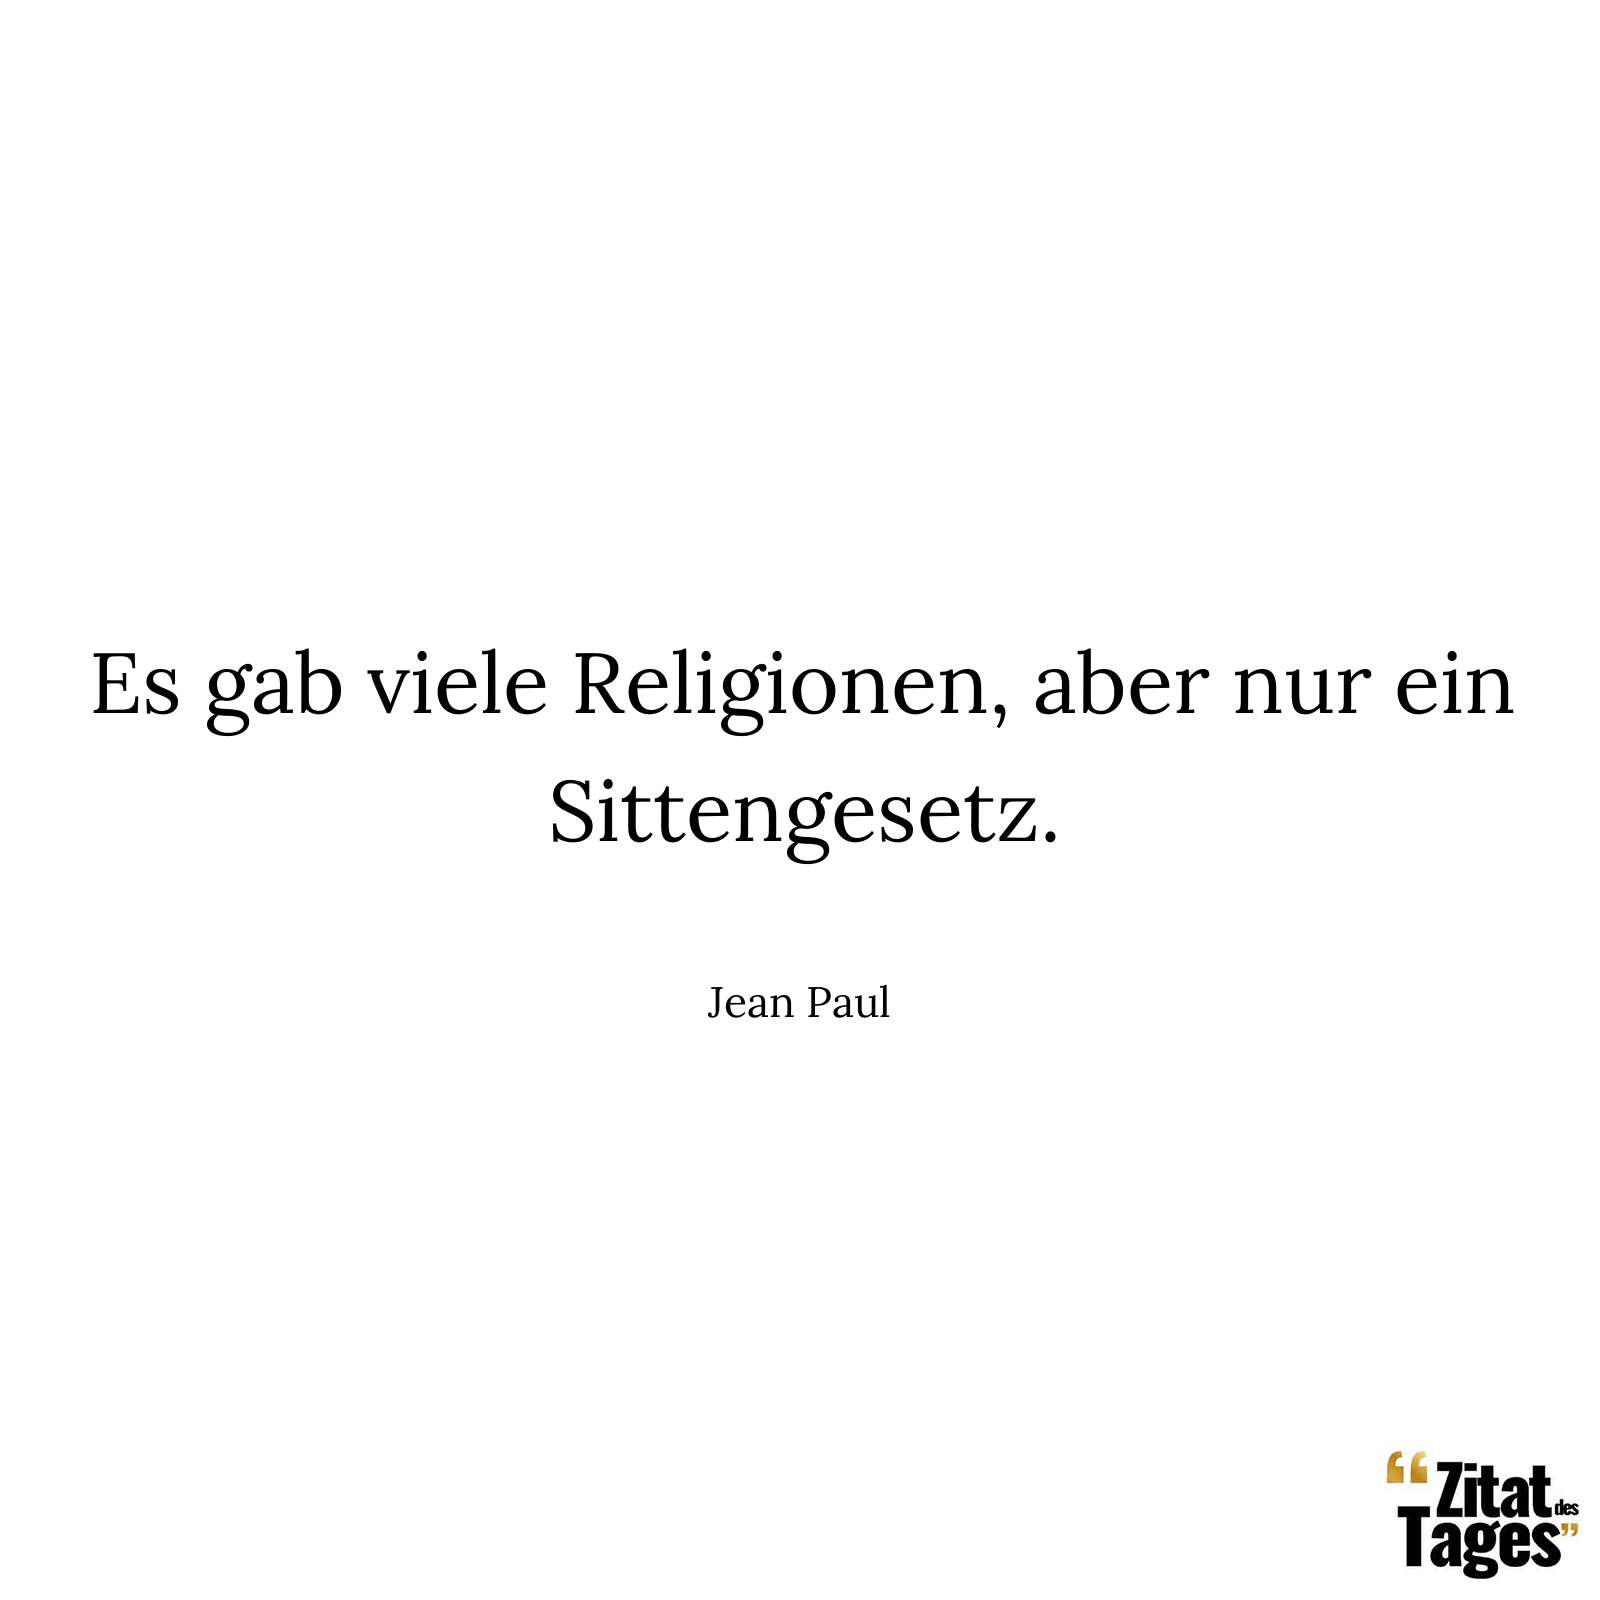 Es gab viele Religionen, aber nur ein Sittengesetz. - Jean Paul